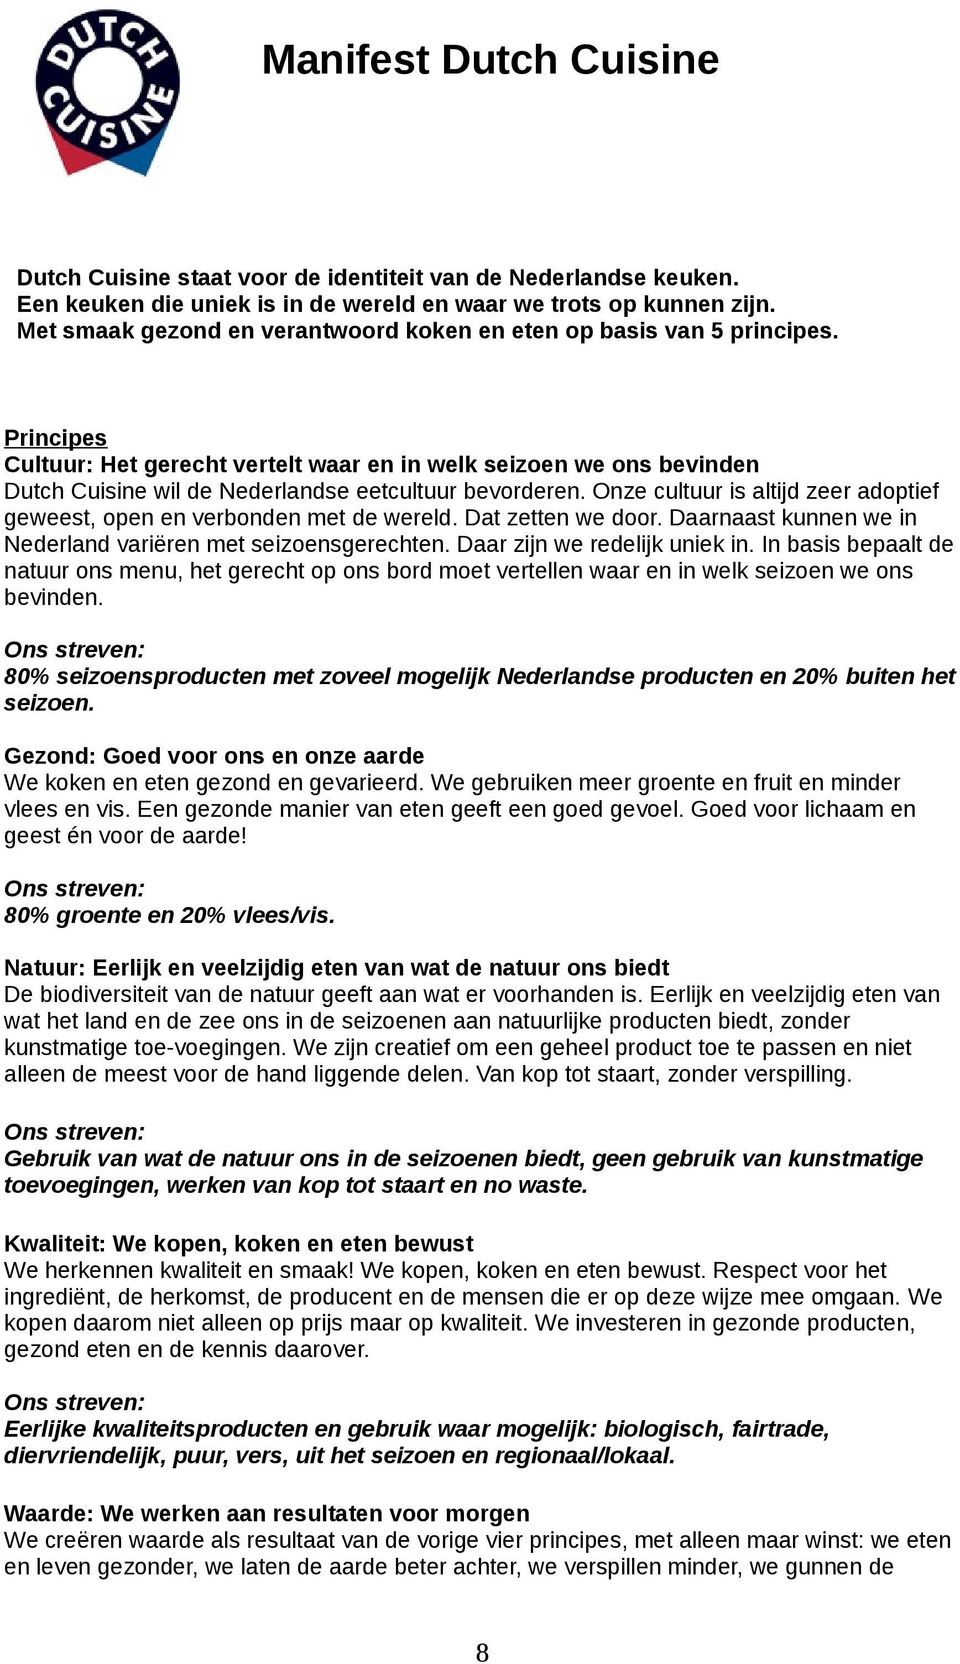 Principes Cultuur: Het gerecht vertelt waar en in welk seizoen we ons bevinden Dutch Cuisine wil de Nederlandse eetcultuur bevorderen.